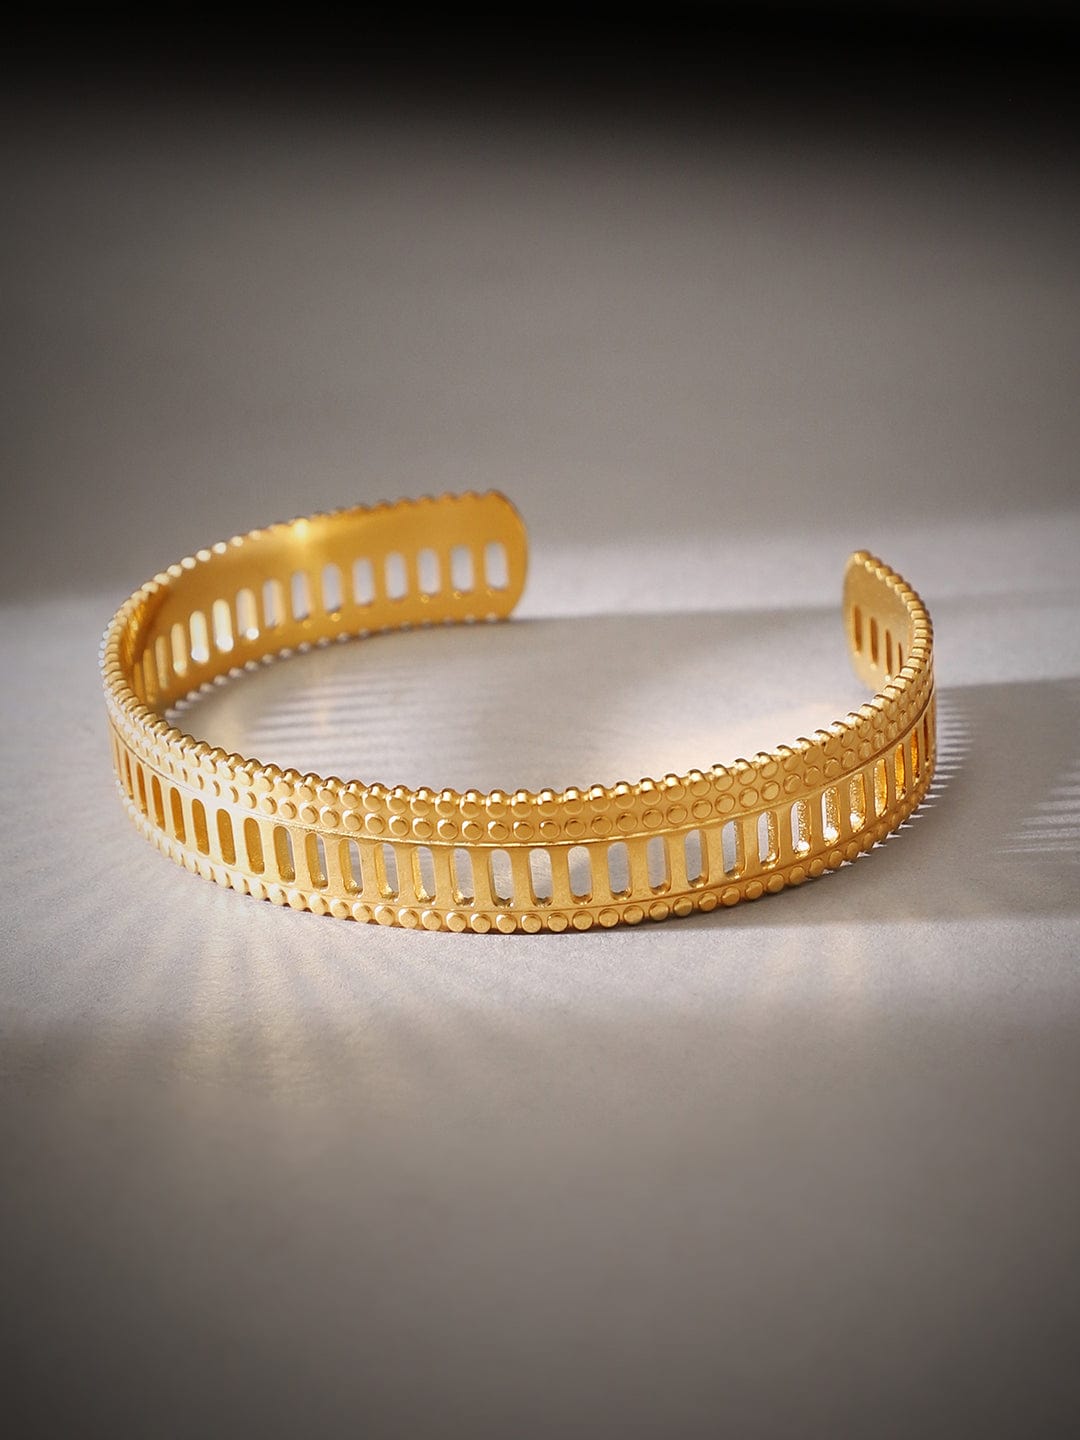 Rubans Voguish Gold Tonedstainless Steel Minimal Adjustable Bracelet Bangles & Bracelets